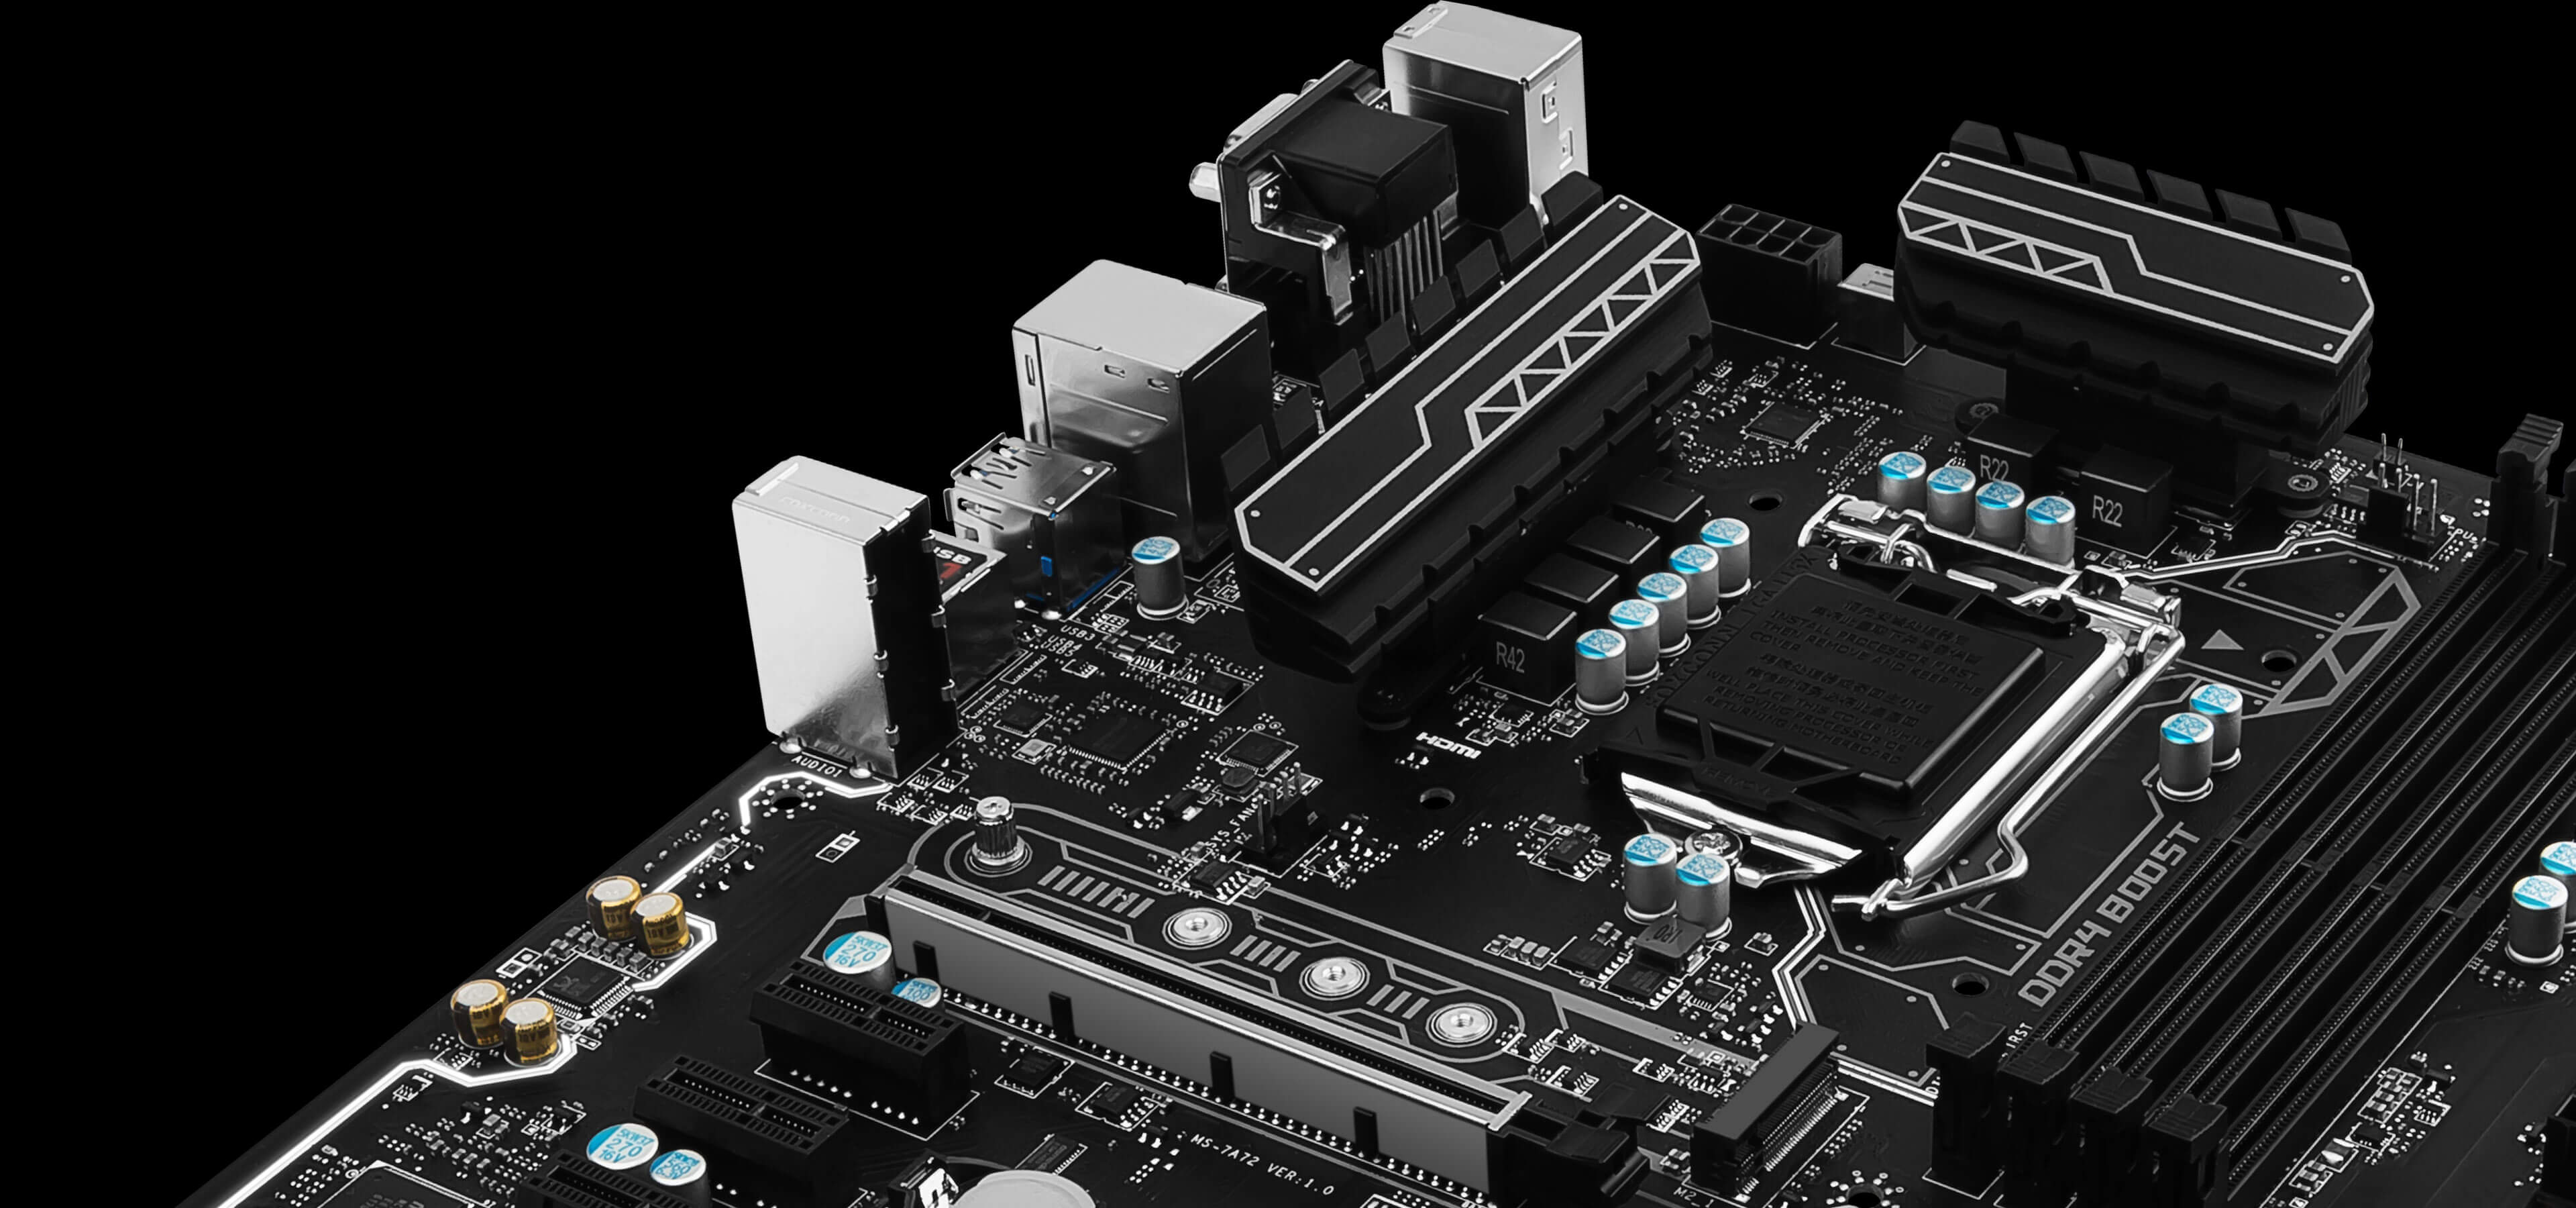 MSI H270 PC MATE 7th/6th Gen USB3 ATX Motherboard - Black (Intel Core i3/i5/i7 Processor, LGA 1151, Dual Channel DDR4, USB 3.1, PCI-E 3.0, PCI-E x1, Sata 6 GB)